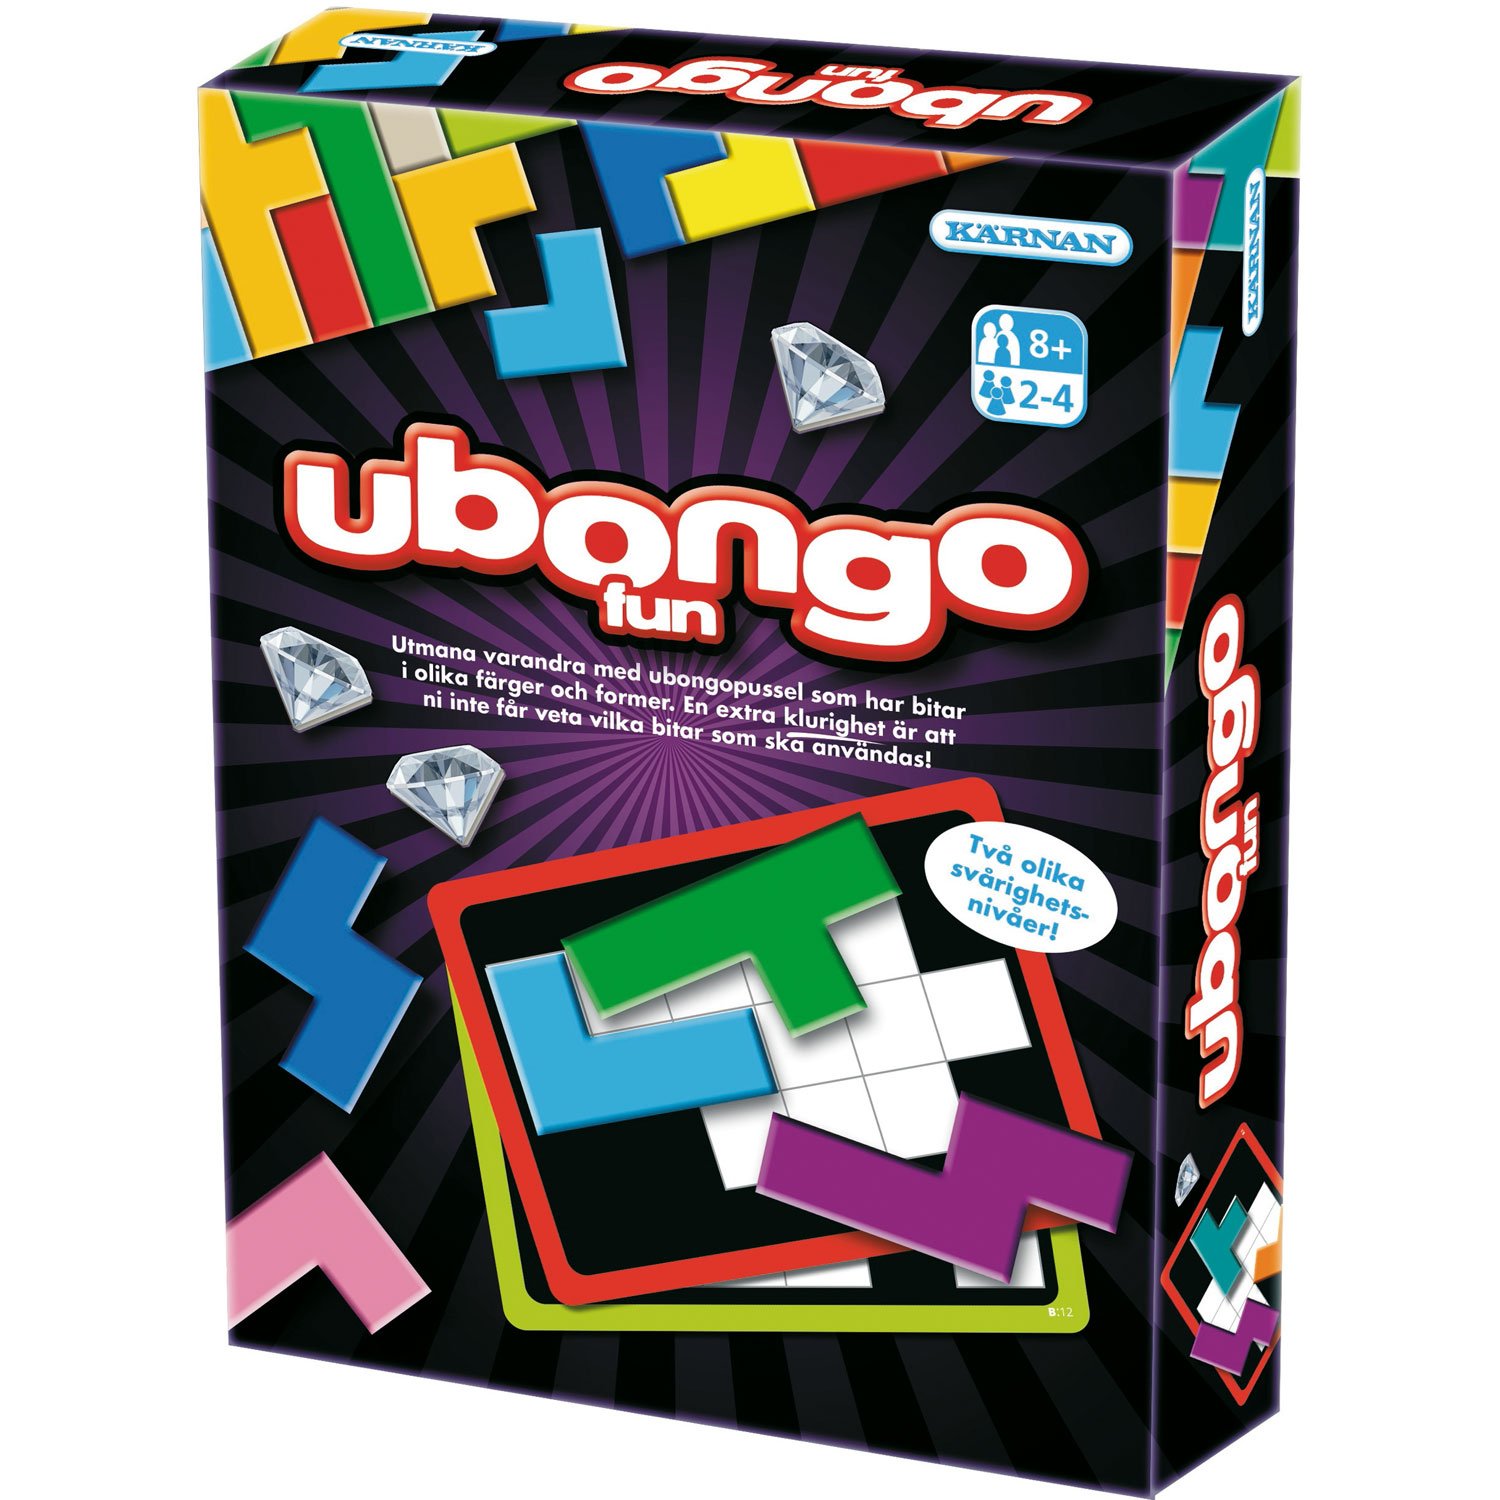 Läs mer om Kärnan Ubongo Fun